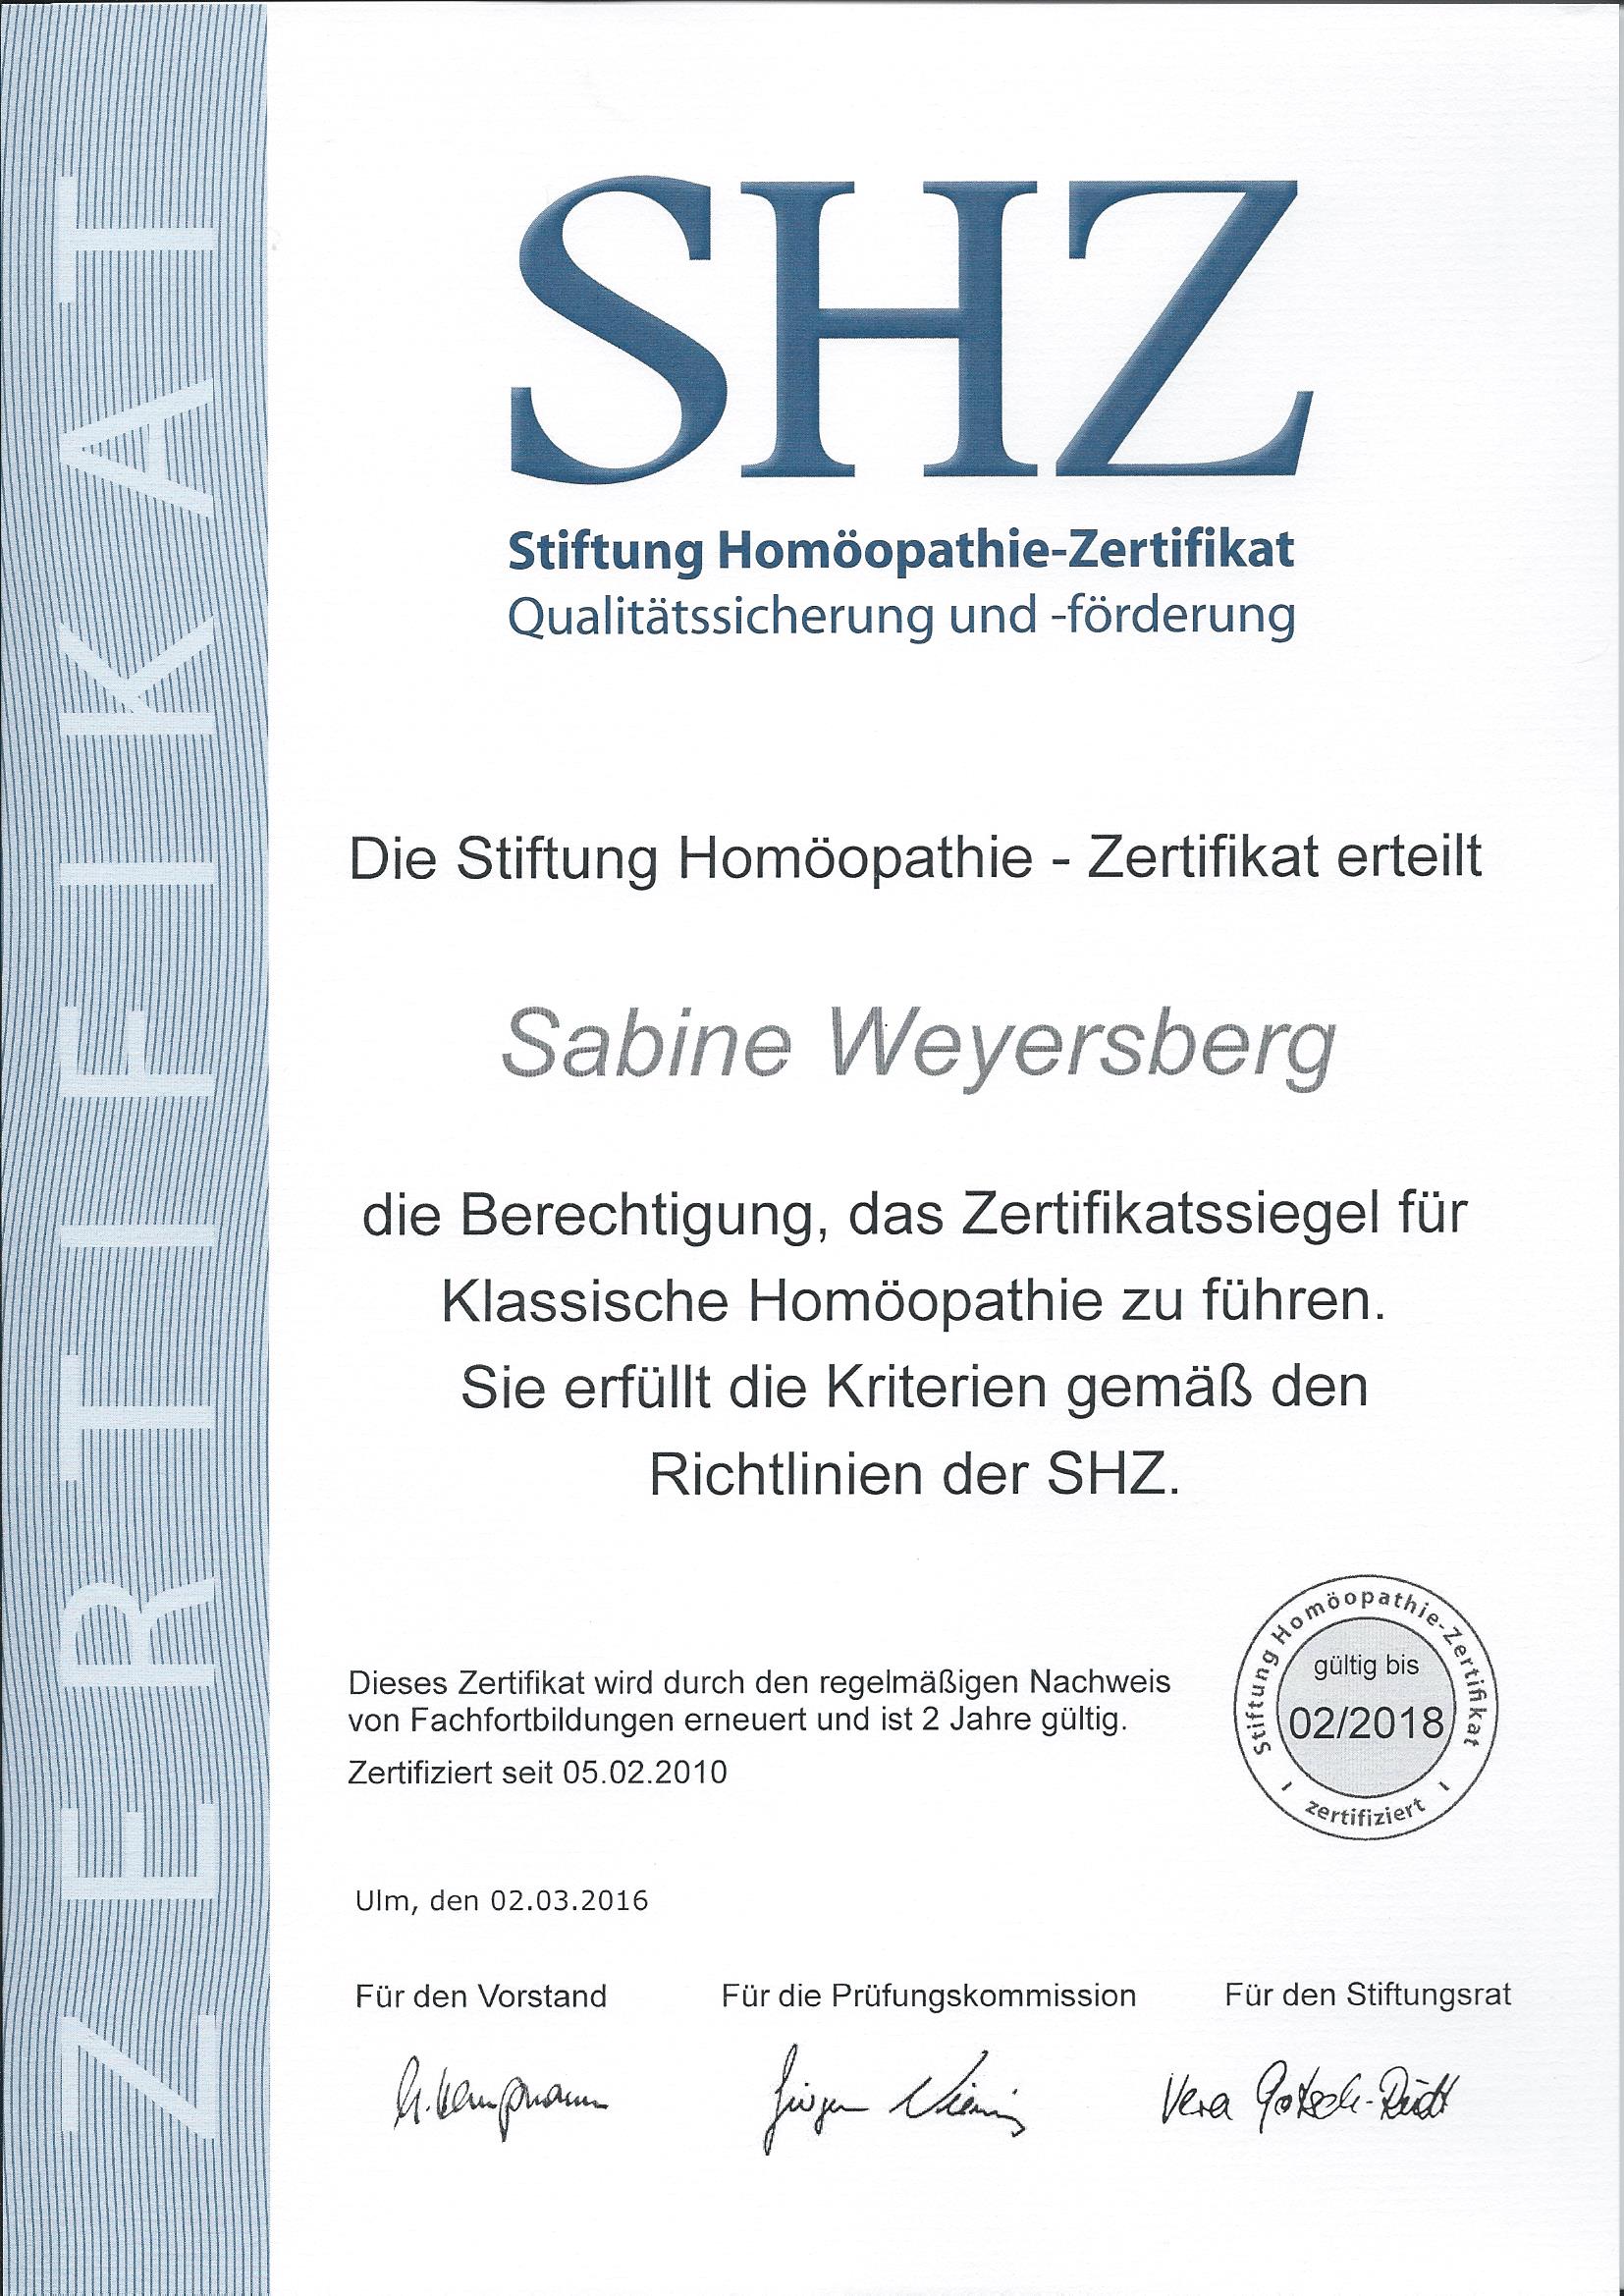 Zertifikatssiegel für Klassische Homöopathie der SHZ